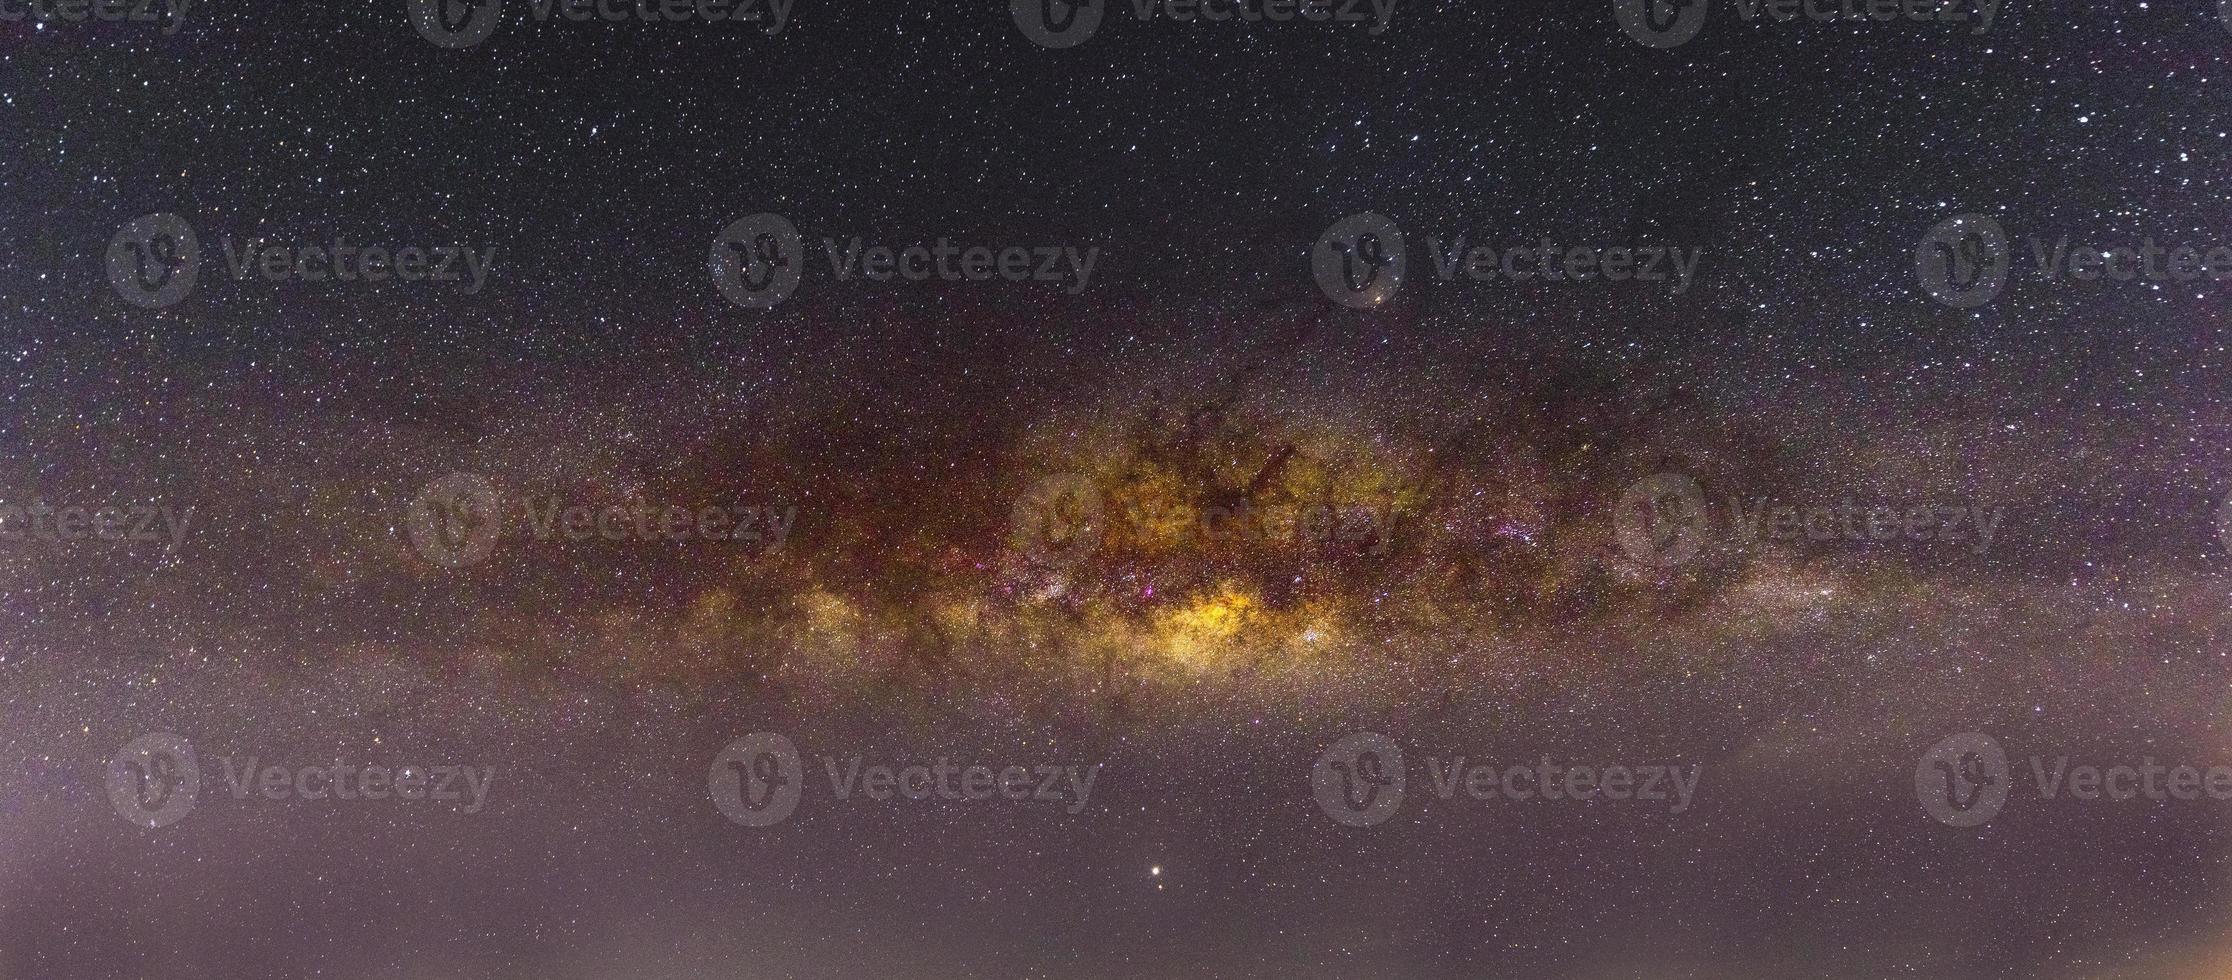 Cenário noturno com a Via Láctea colorida e amarela clara cheia de estrelas no céu no verão belo universo de fundo do espaço foto